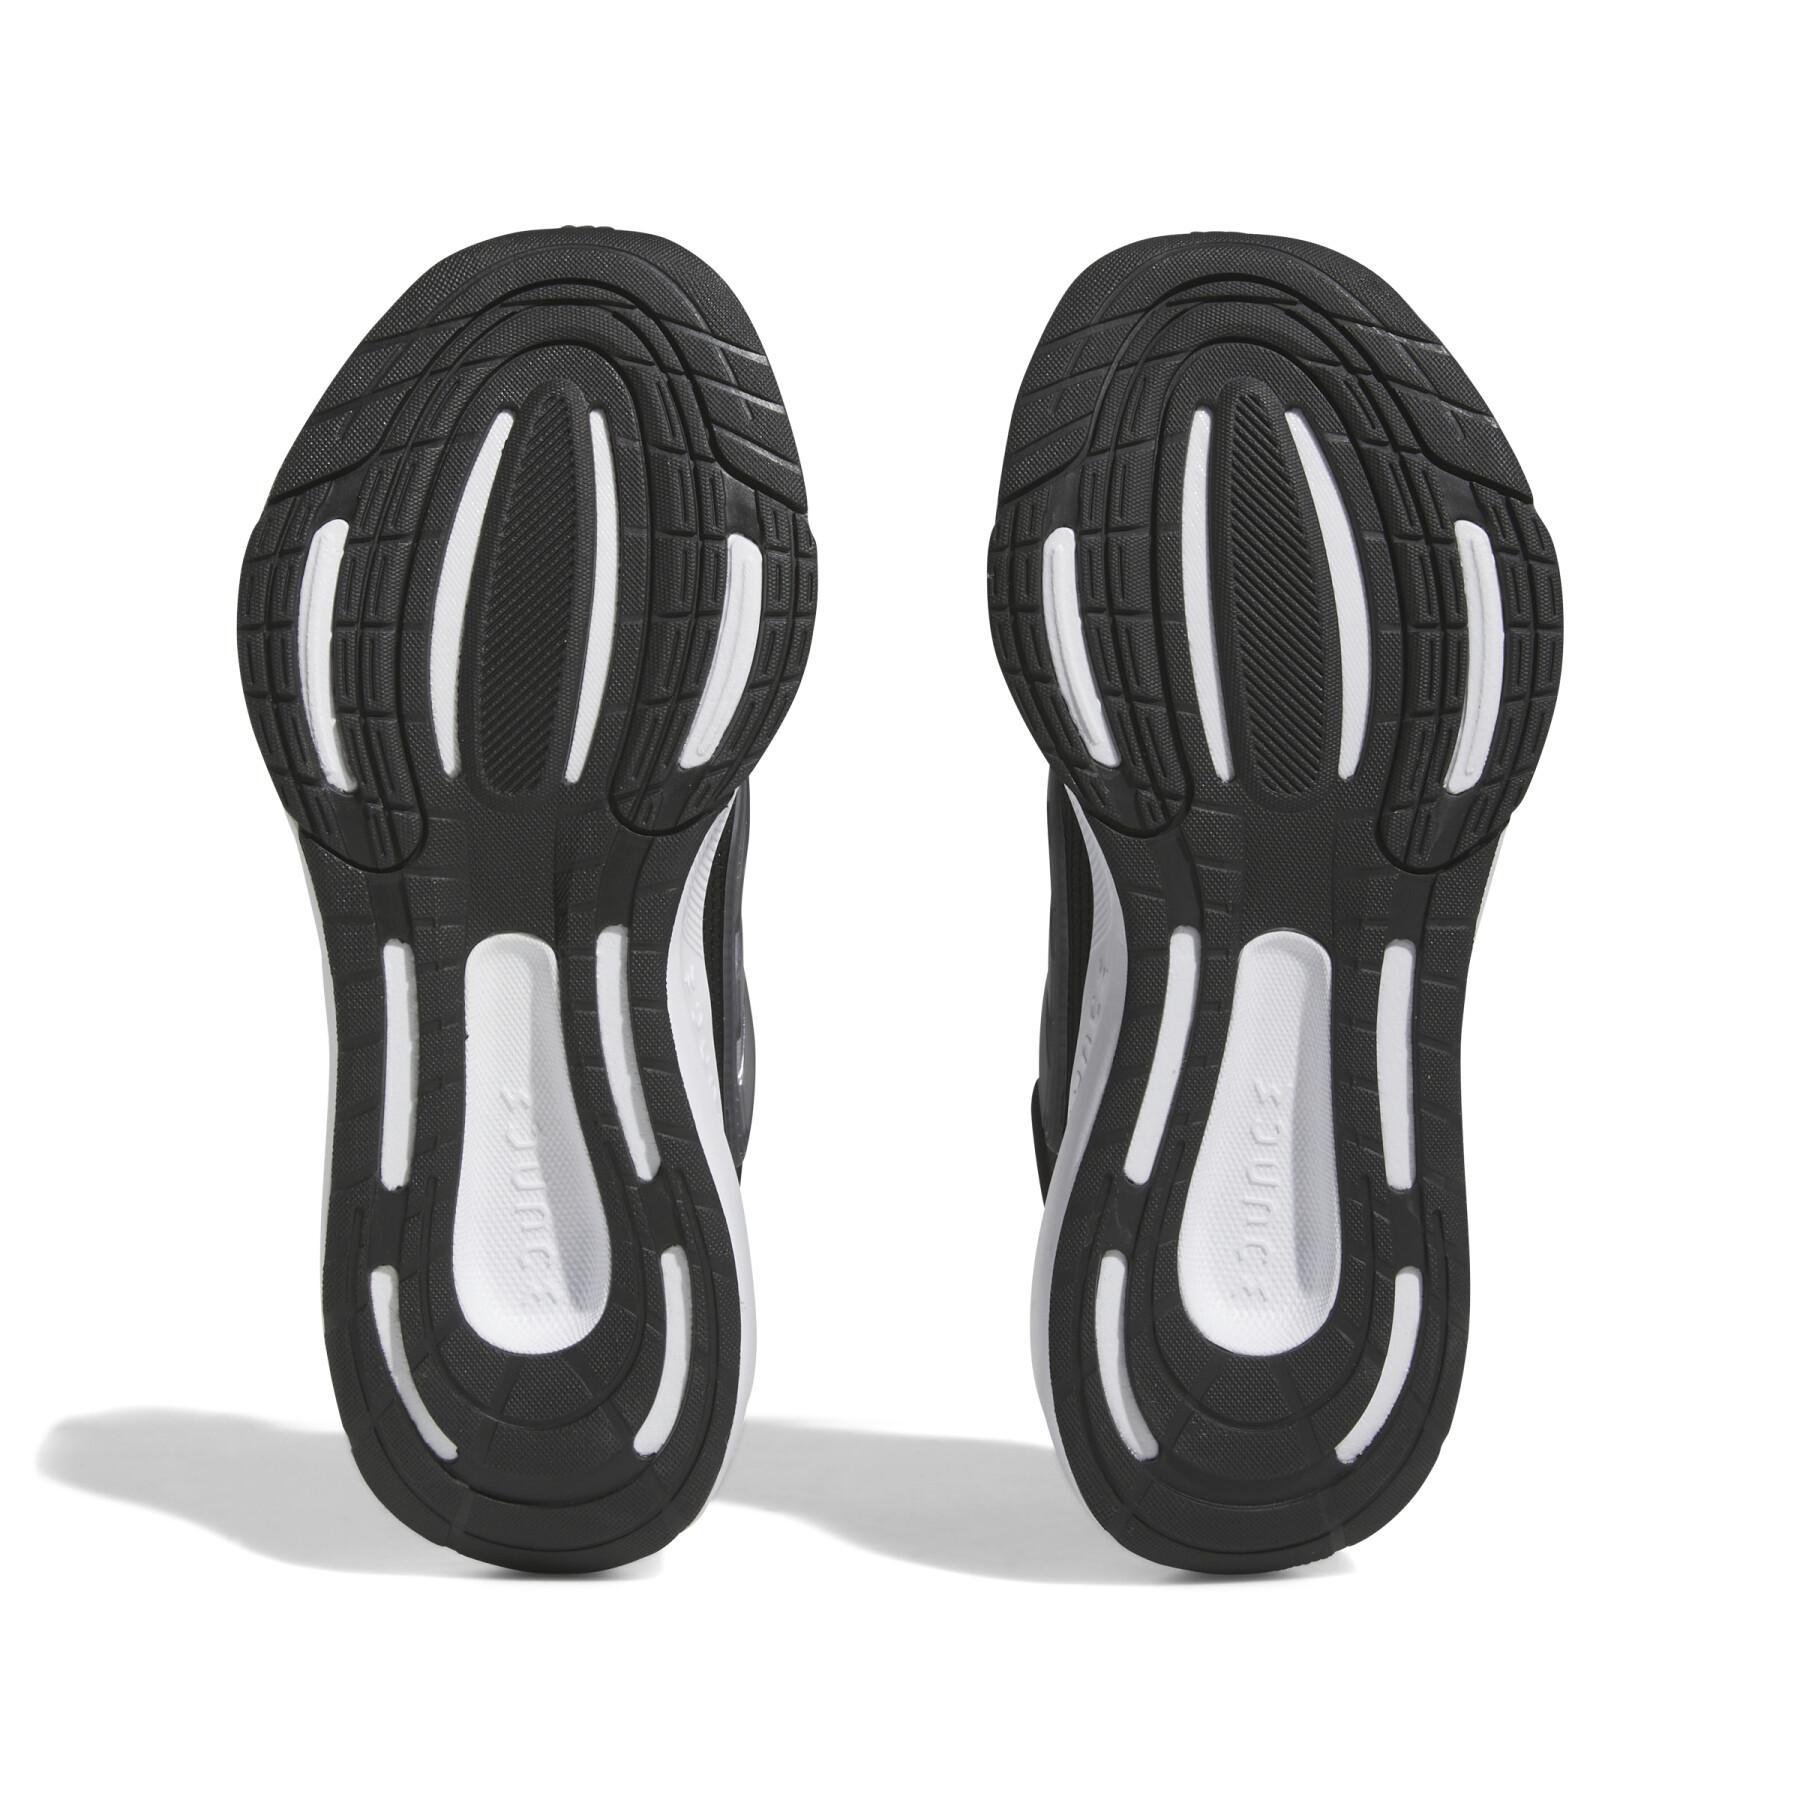 Chaussures de running enfant adidas Ultrabounce Sport